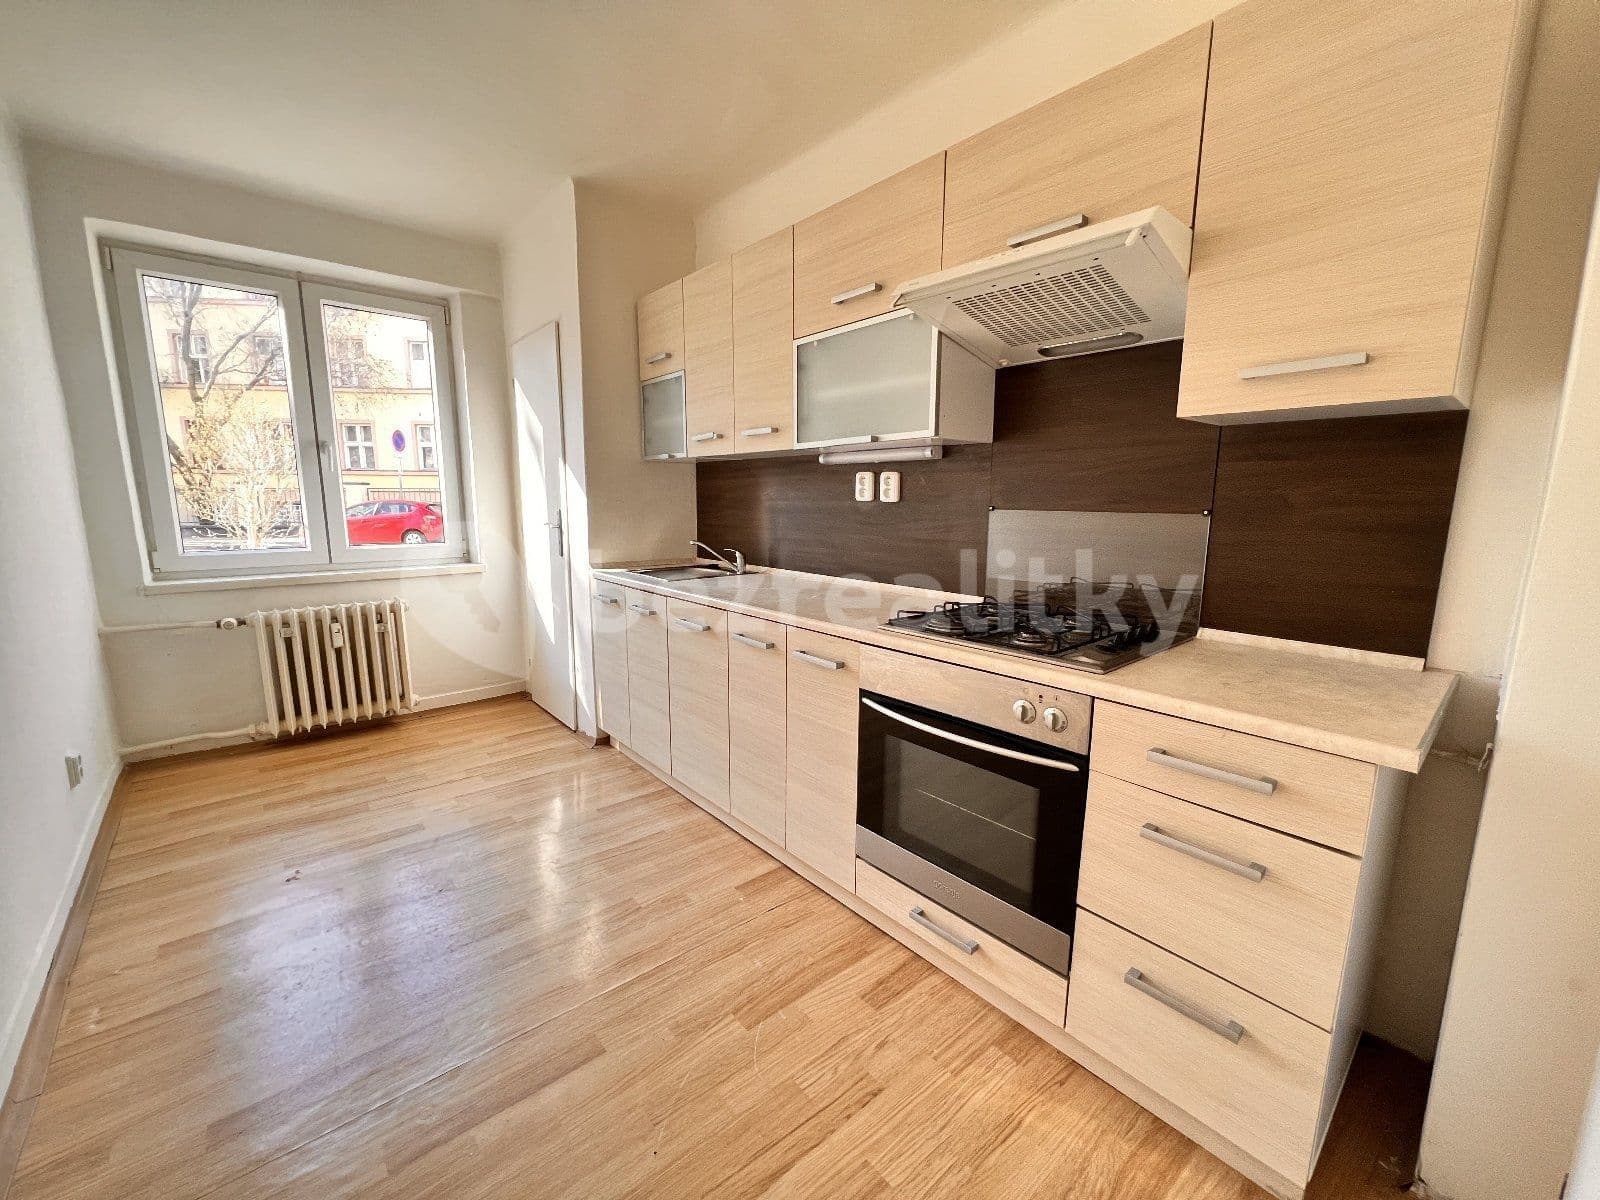 3 bedroom flat to rent, 76 m², Na Bělidle, Ostrava, Moravskoslezský Region